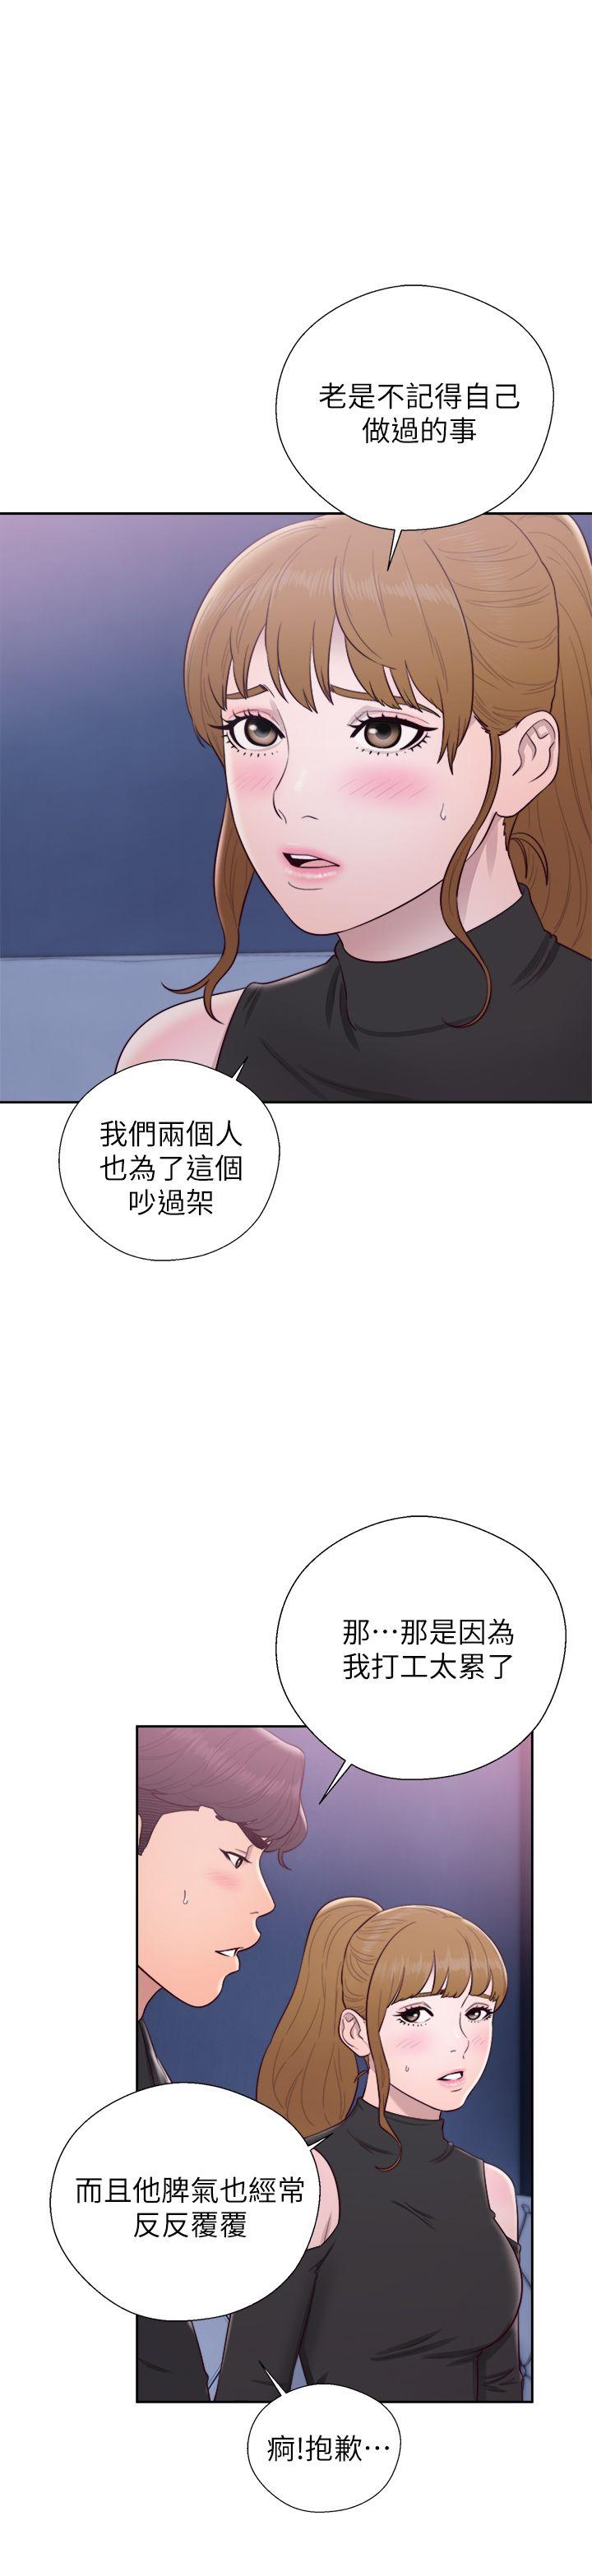 韩国污漫画 青春:逆齡小鮮肉 第26话 34